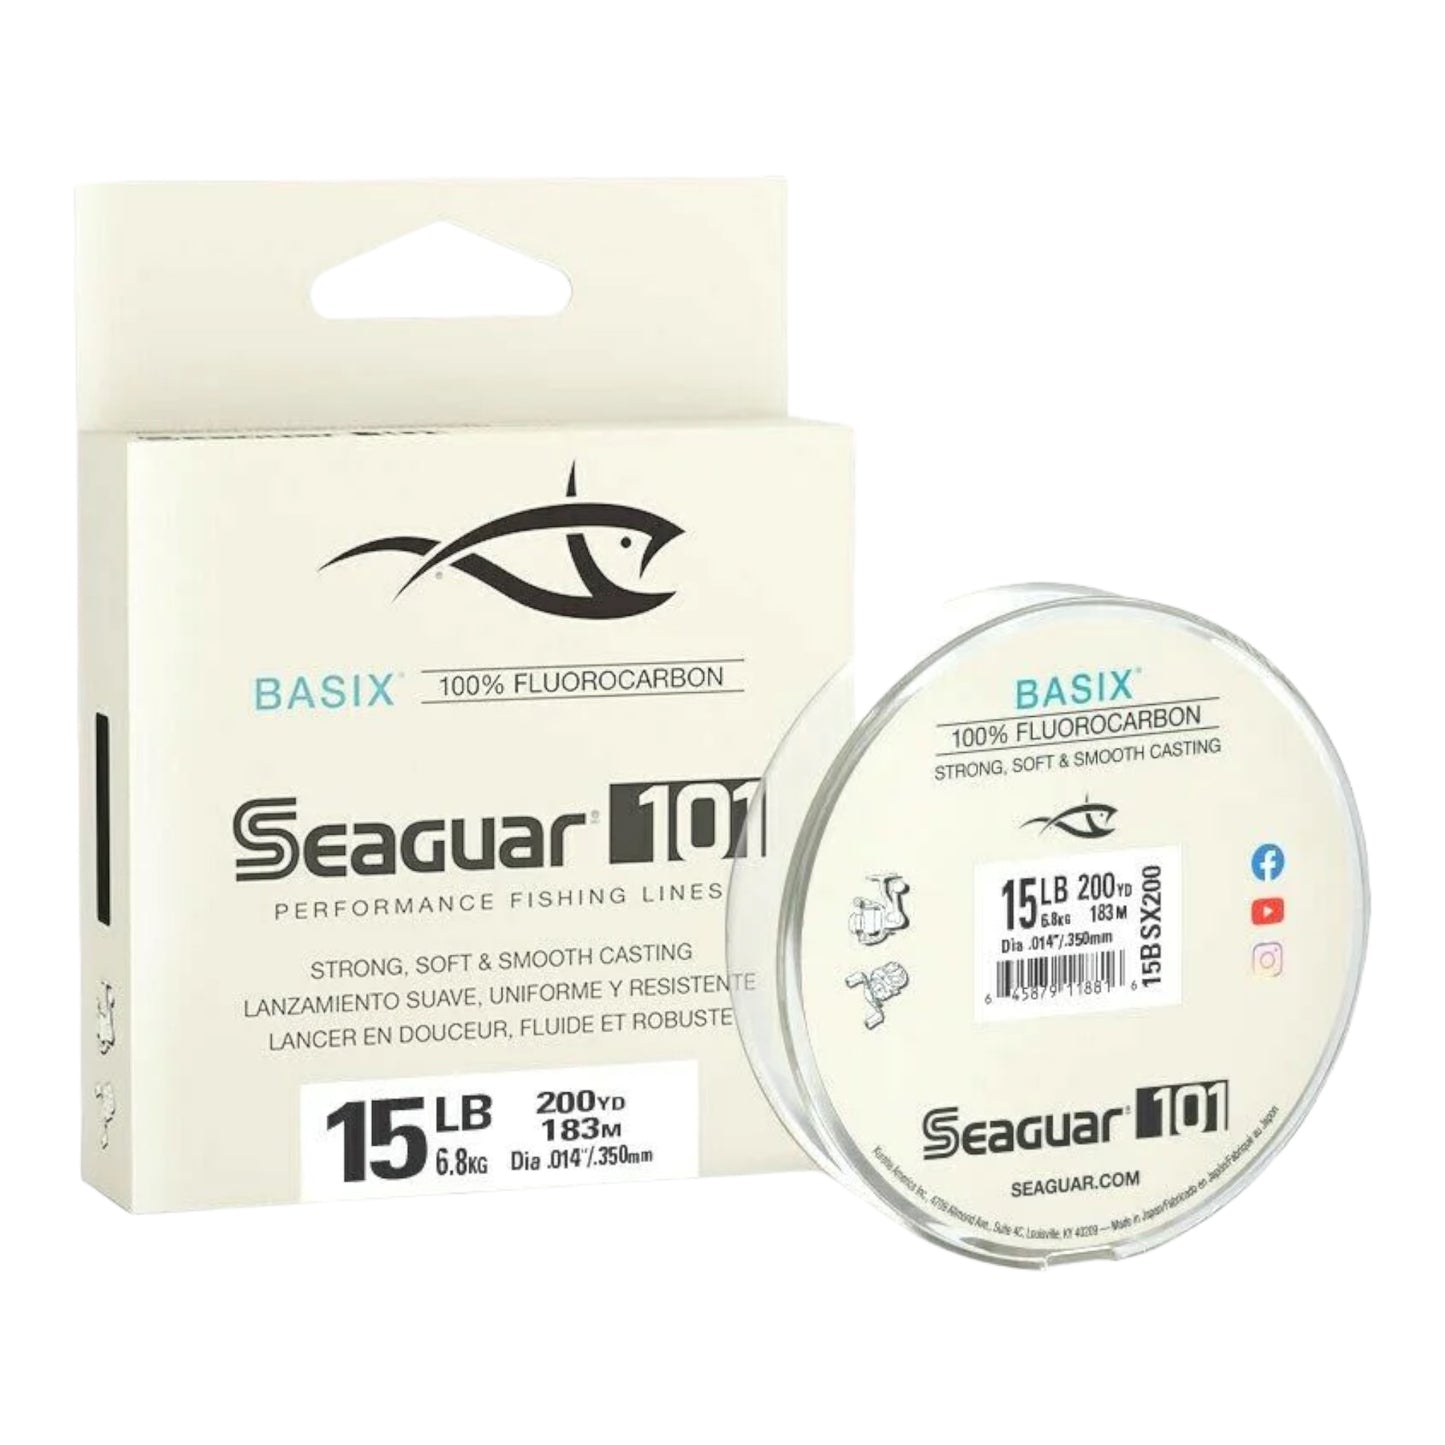 Seaguar BasiX 100% Fluorocarbon Line - 200 yds